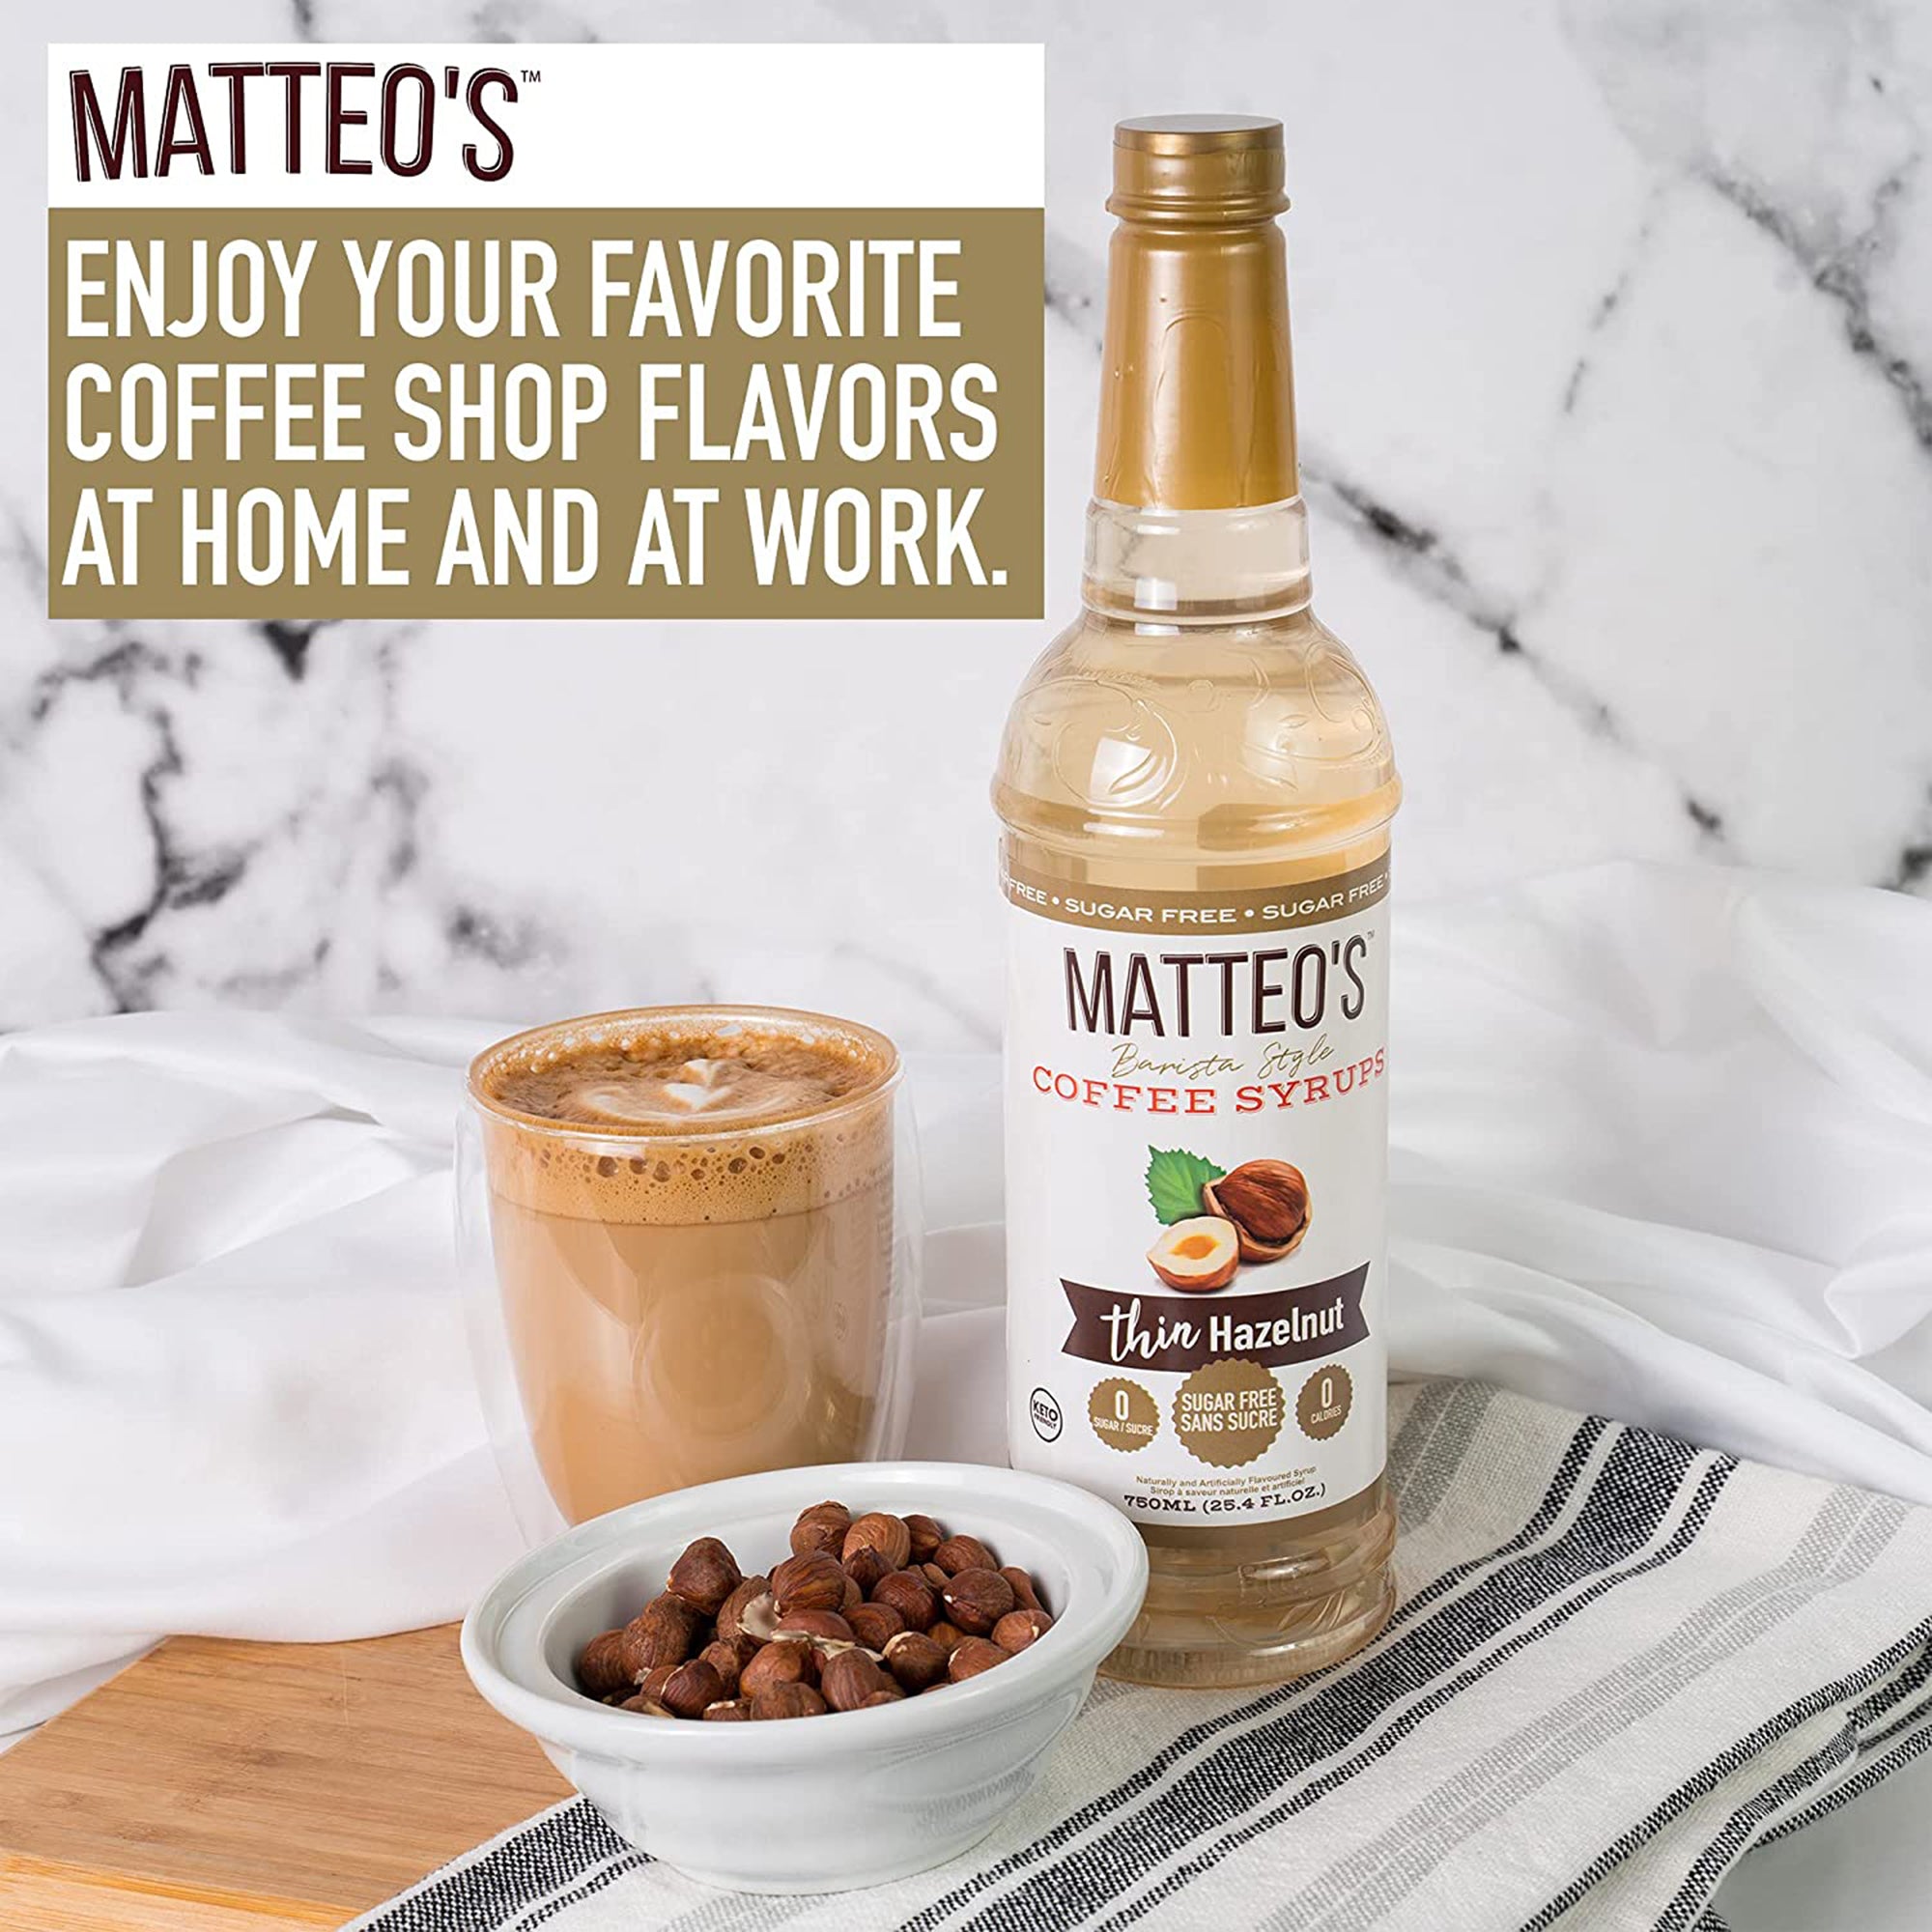 Sirop de café sans sucre de Matteo, cannelle vanille, 0 calories, 0 su -  Matteo's Coffee Syrup